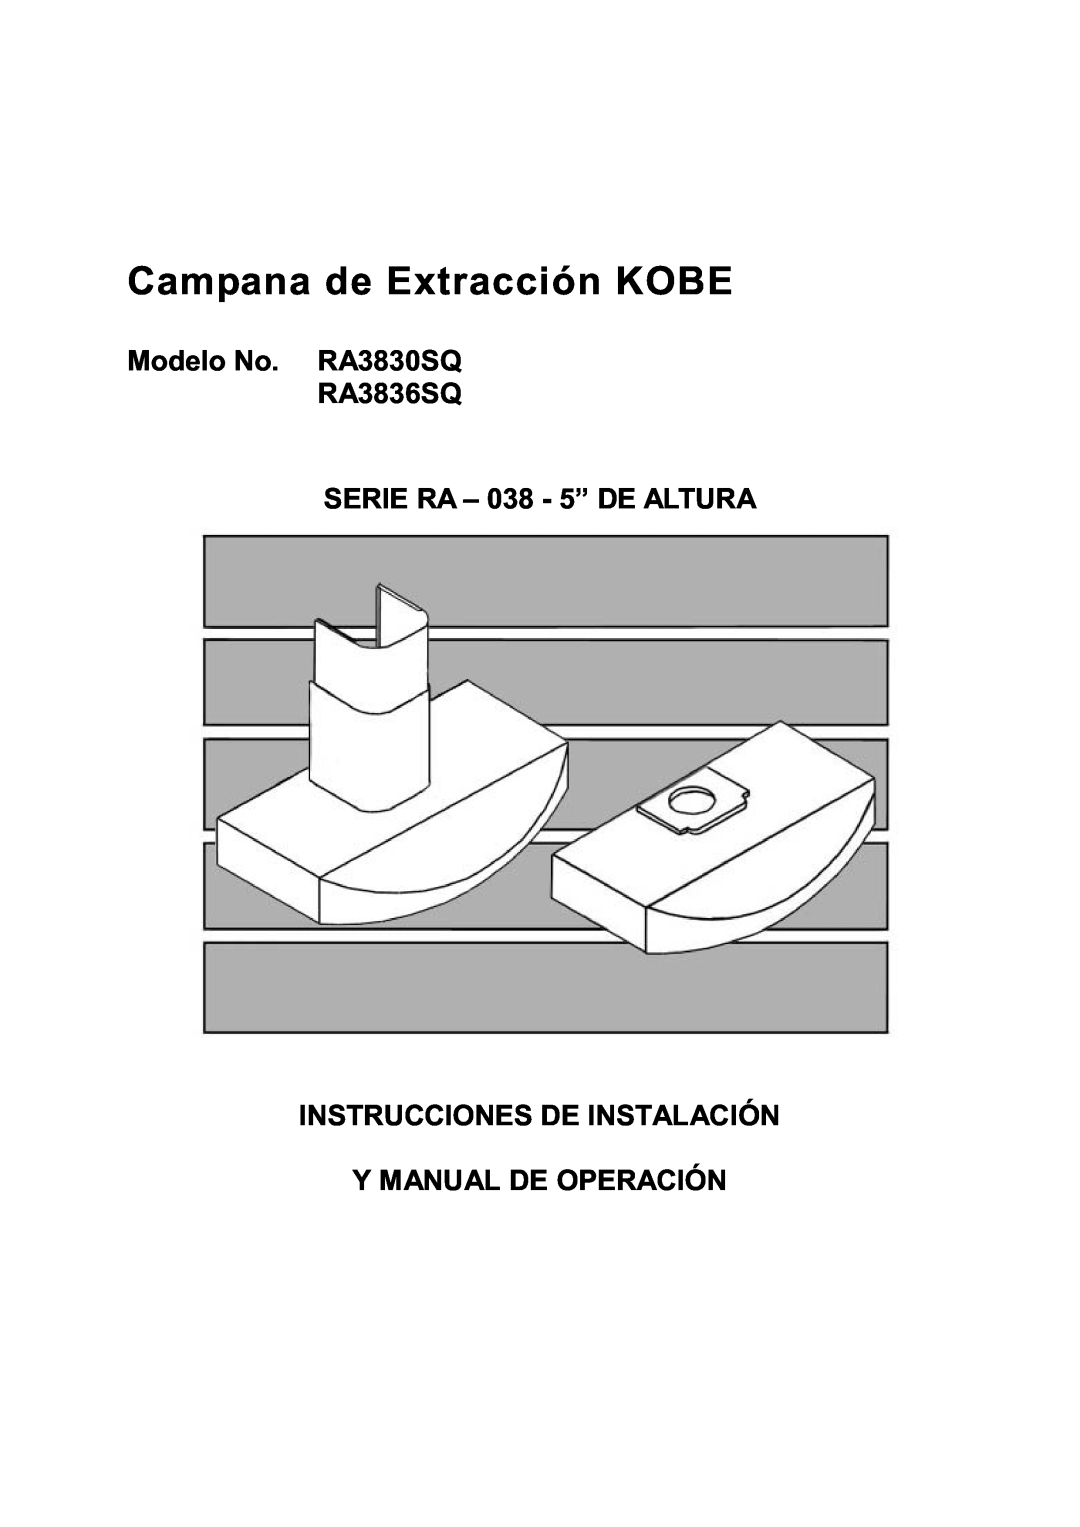 Kobe Range Hoods Campana de Extracción KOBE, Modelo No. RA3830SQ RA3836SQ, SERIE RA - 038 - 5” DE ALTURA 